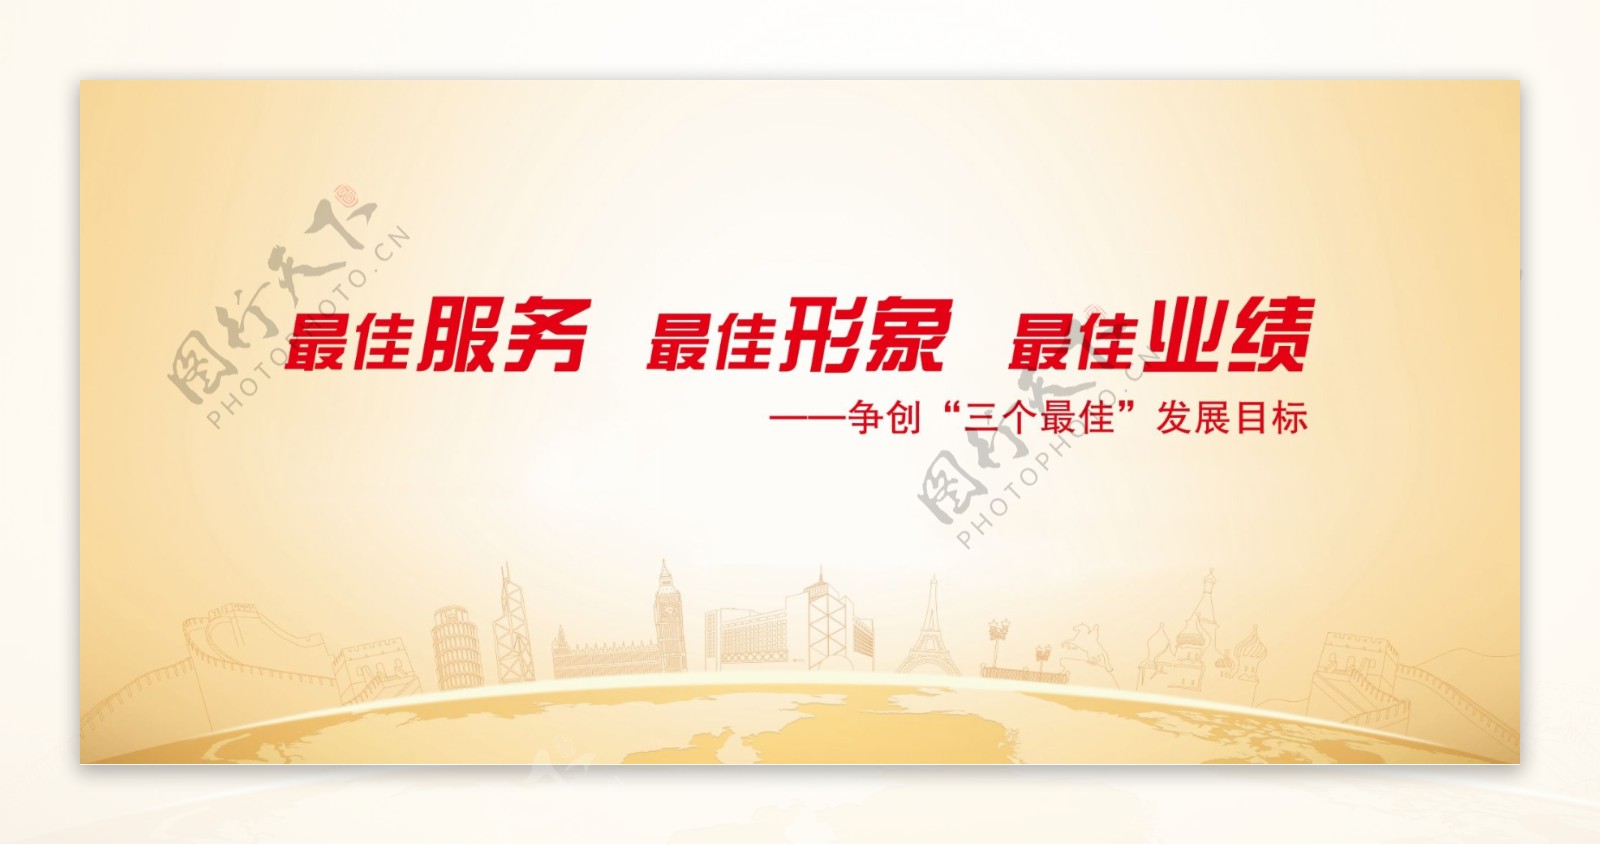 中国银行展板图片